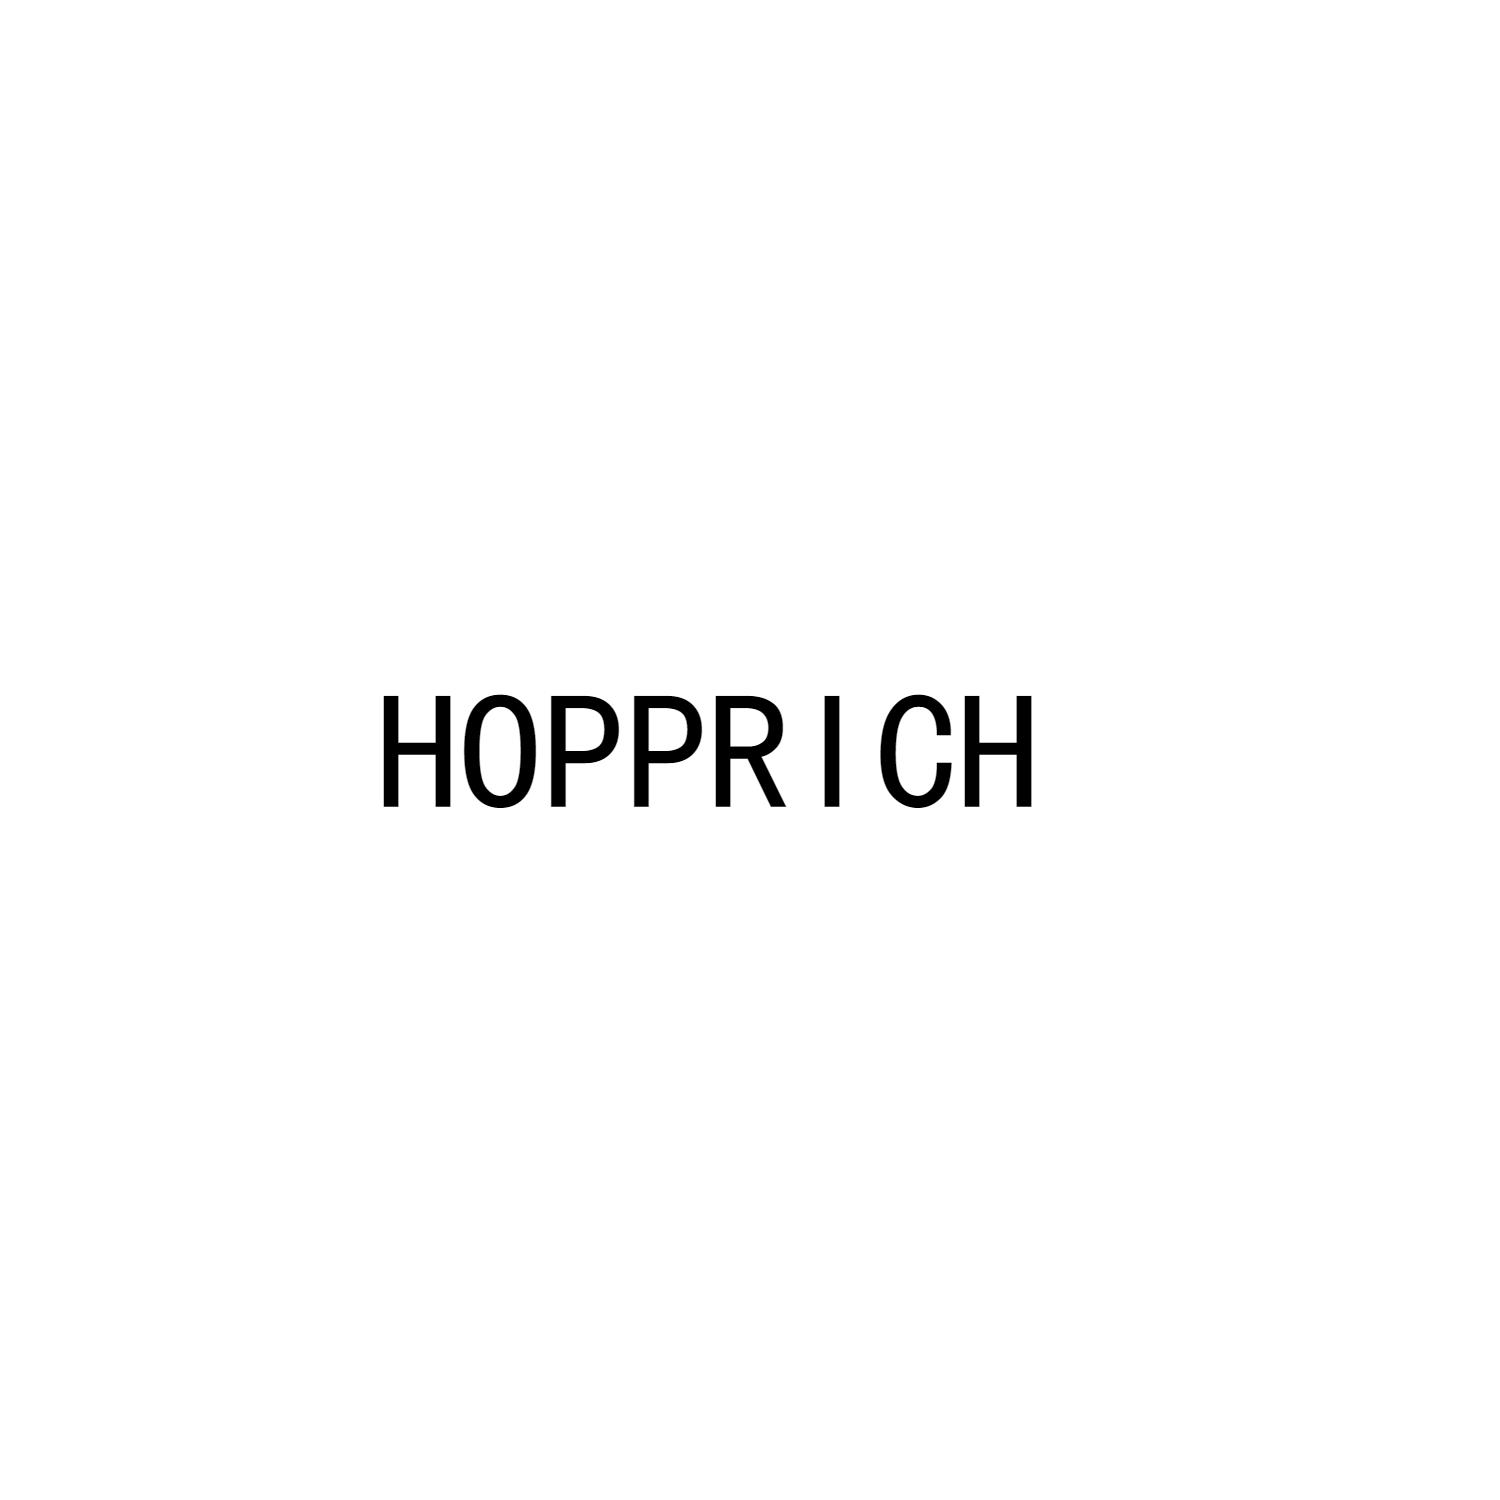 HOPPRICH